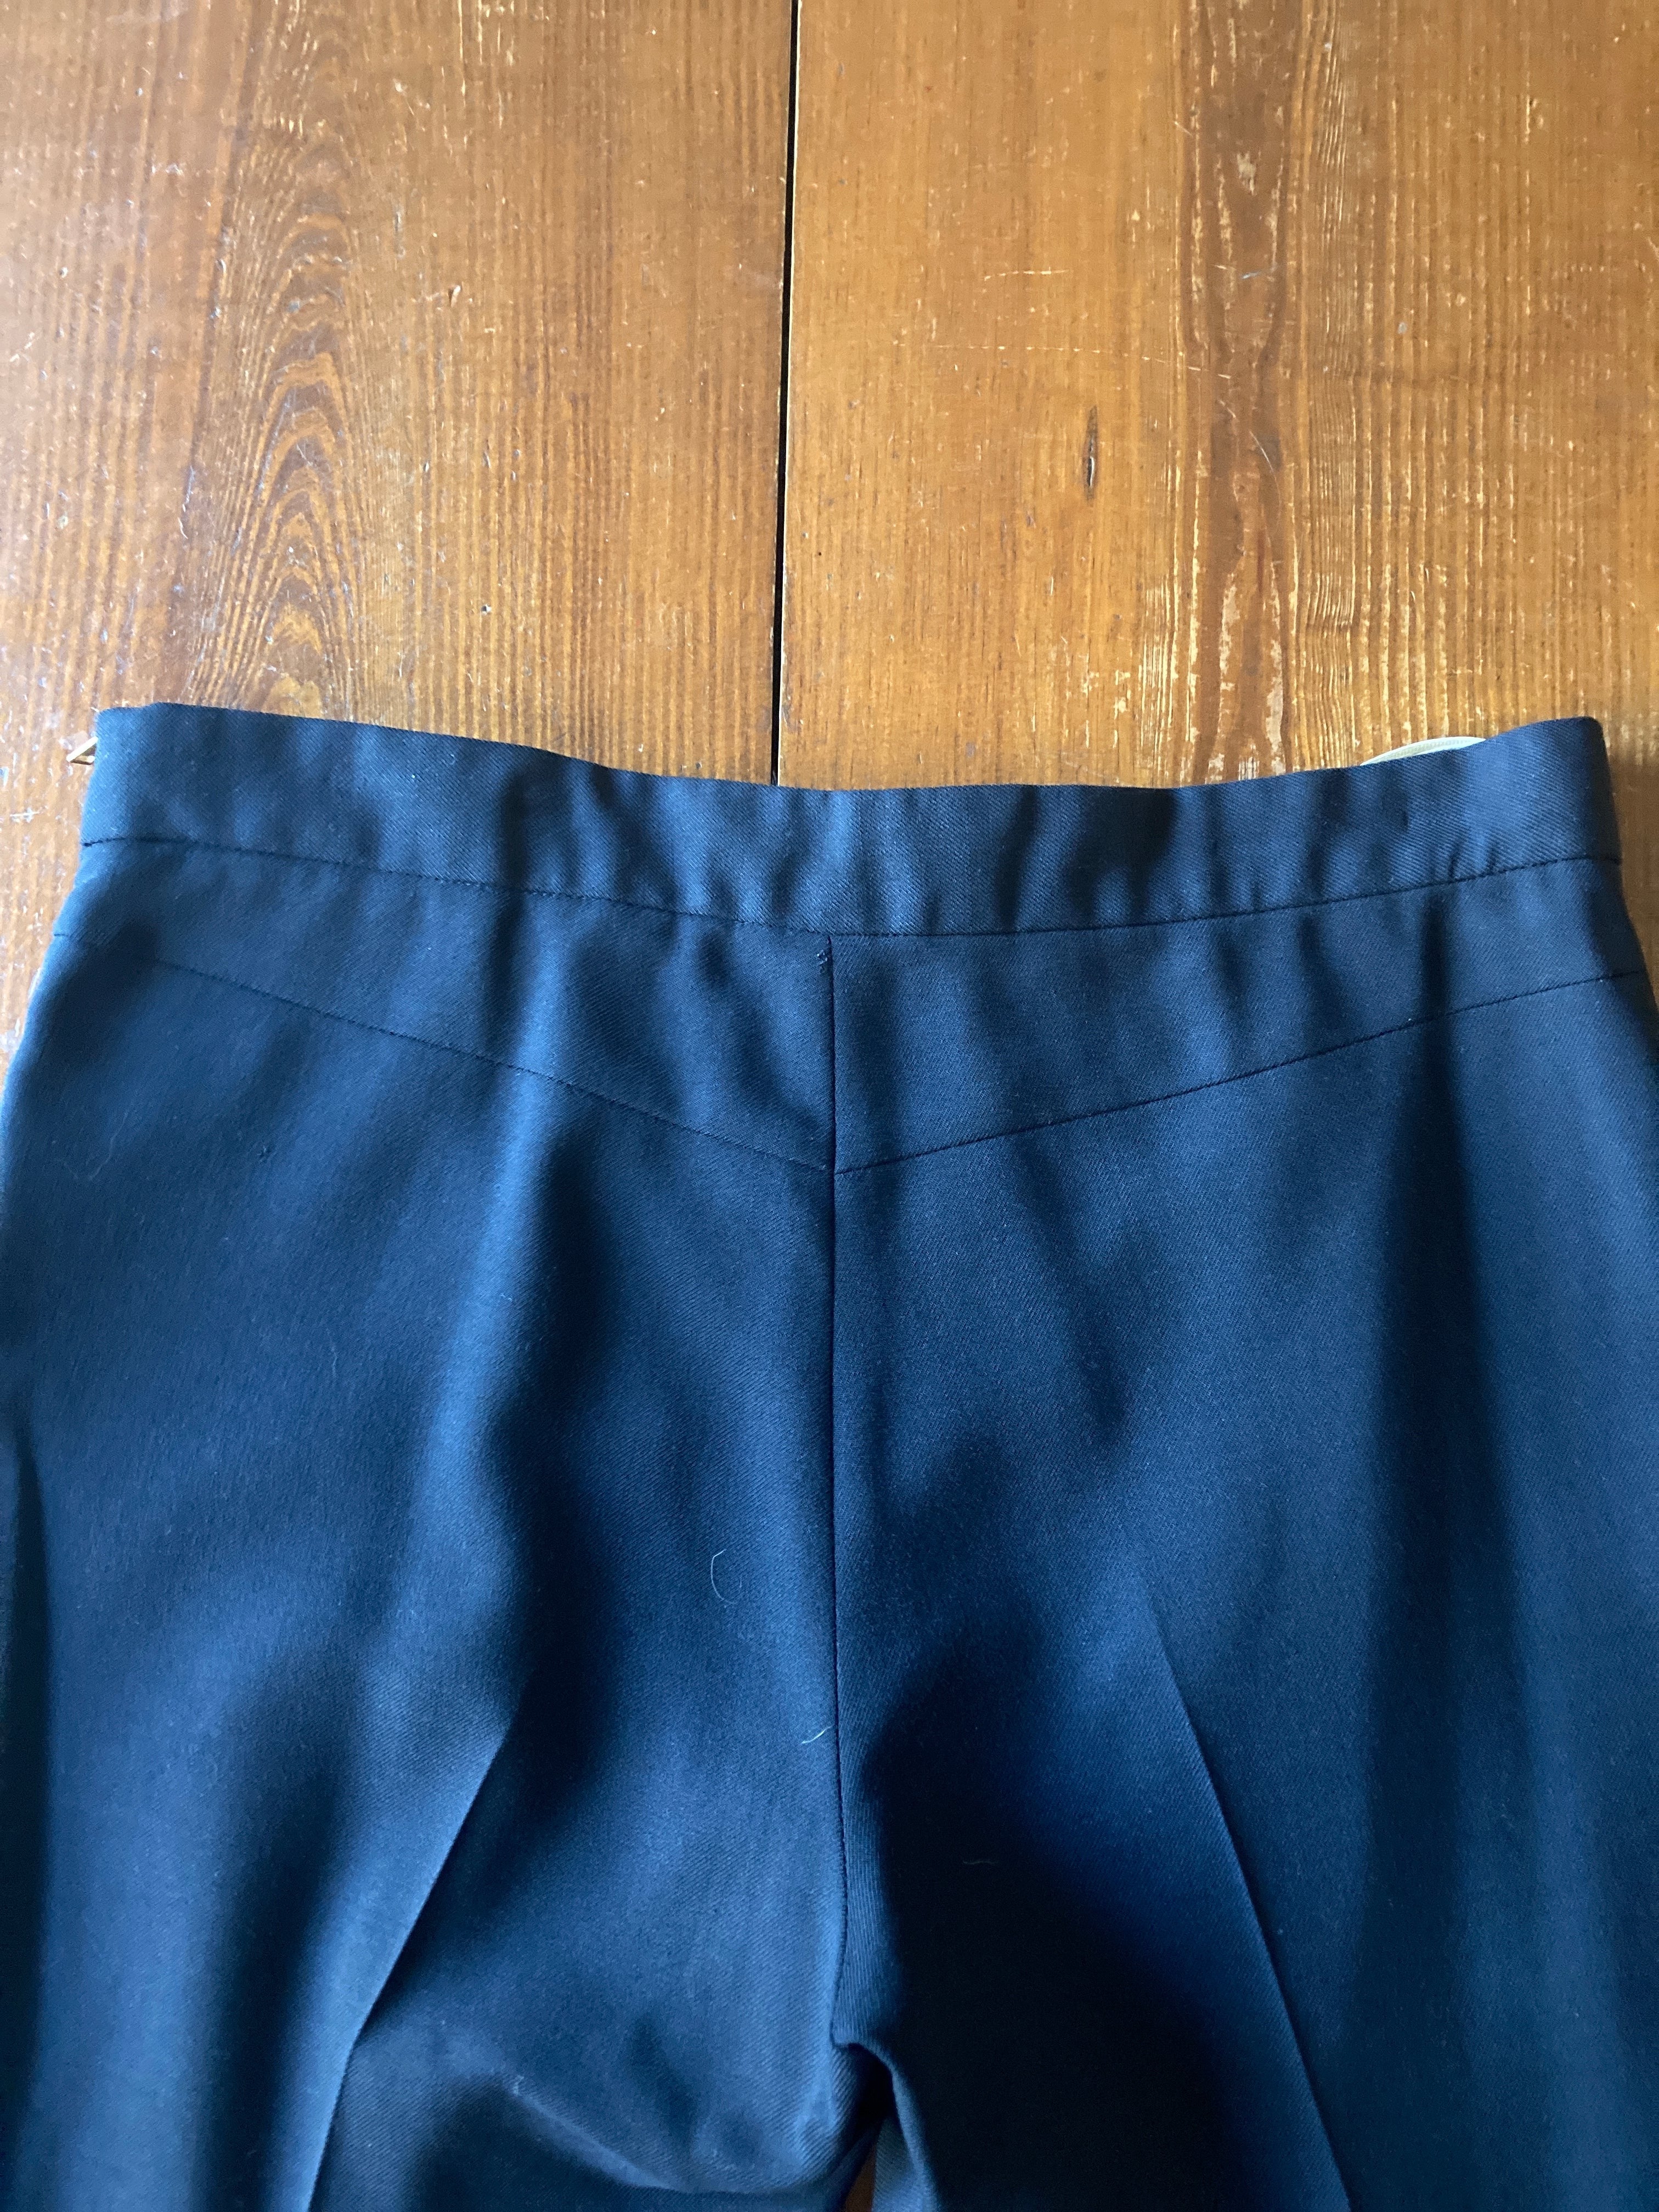 Marni Side Zip Navy Pants, 40